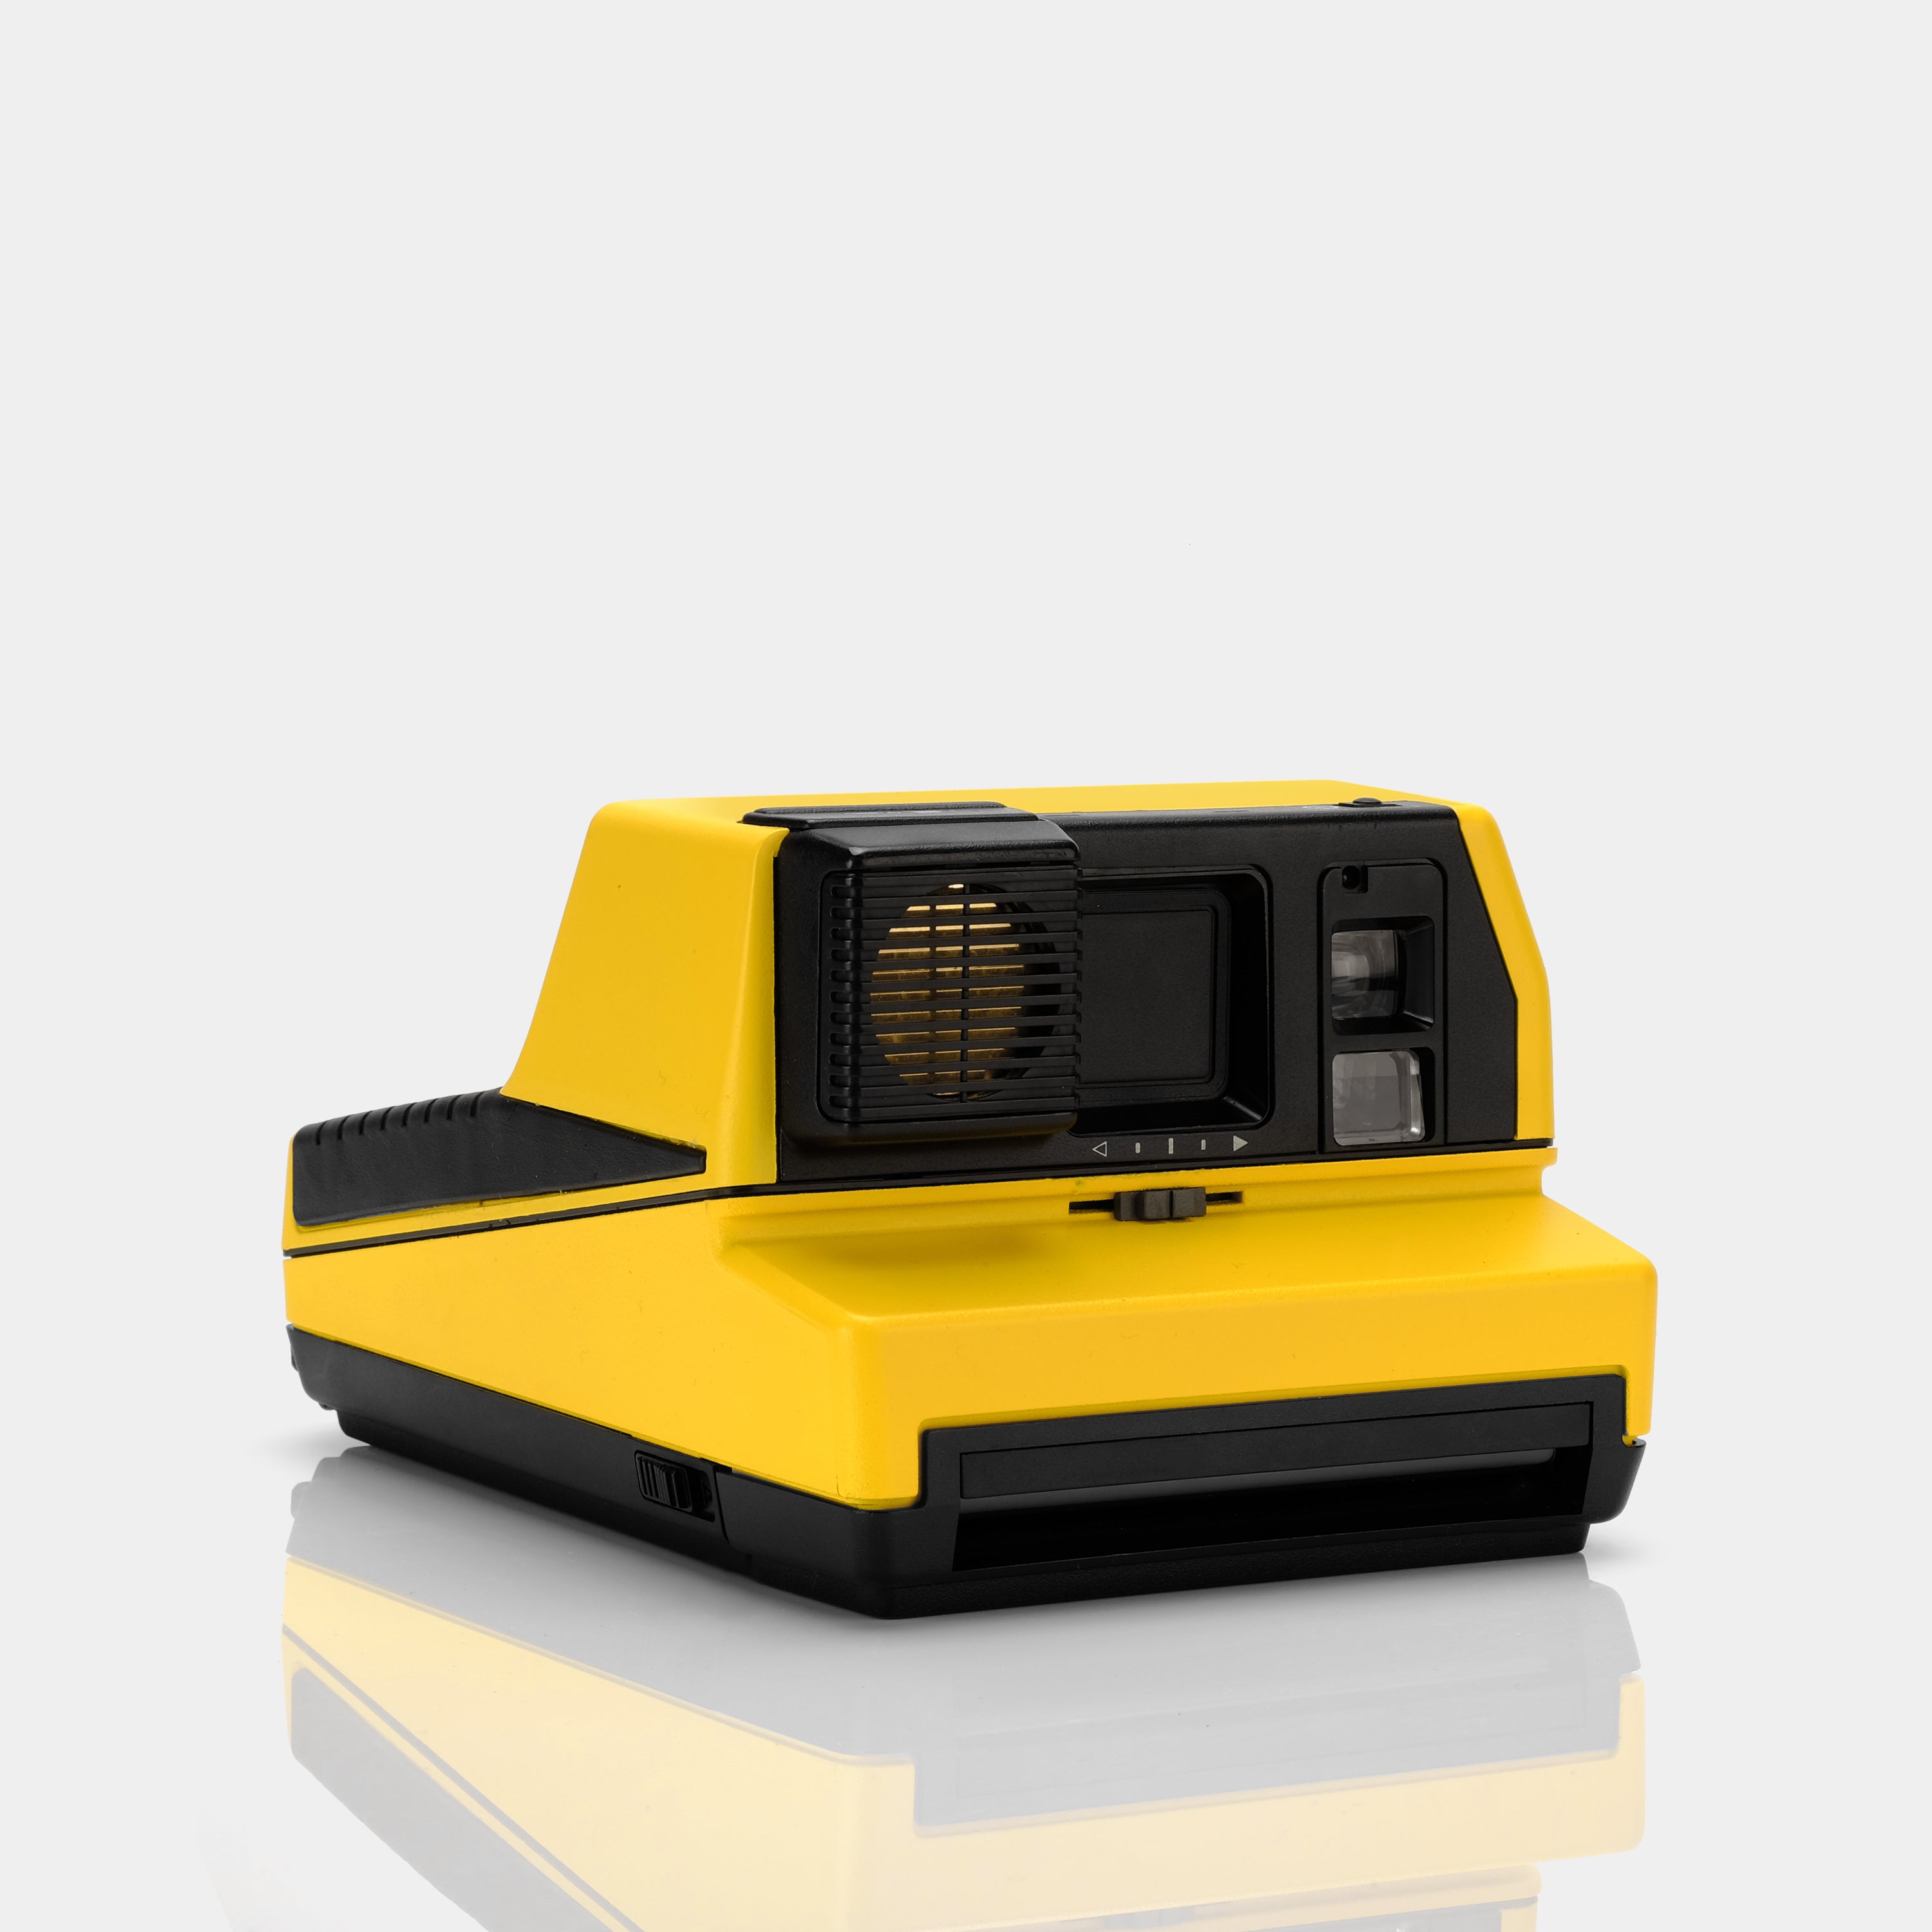 Polaroid 600 Impulse AutoFocus Yellow Instant Film Camera